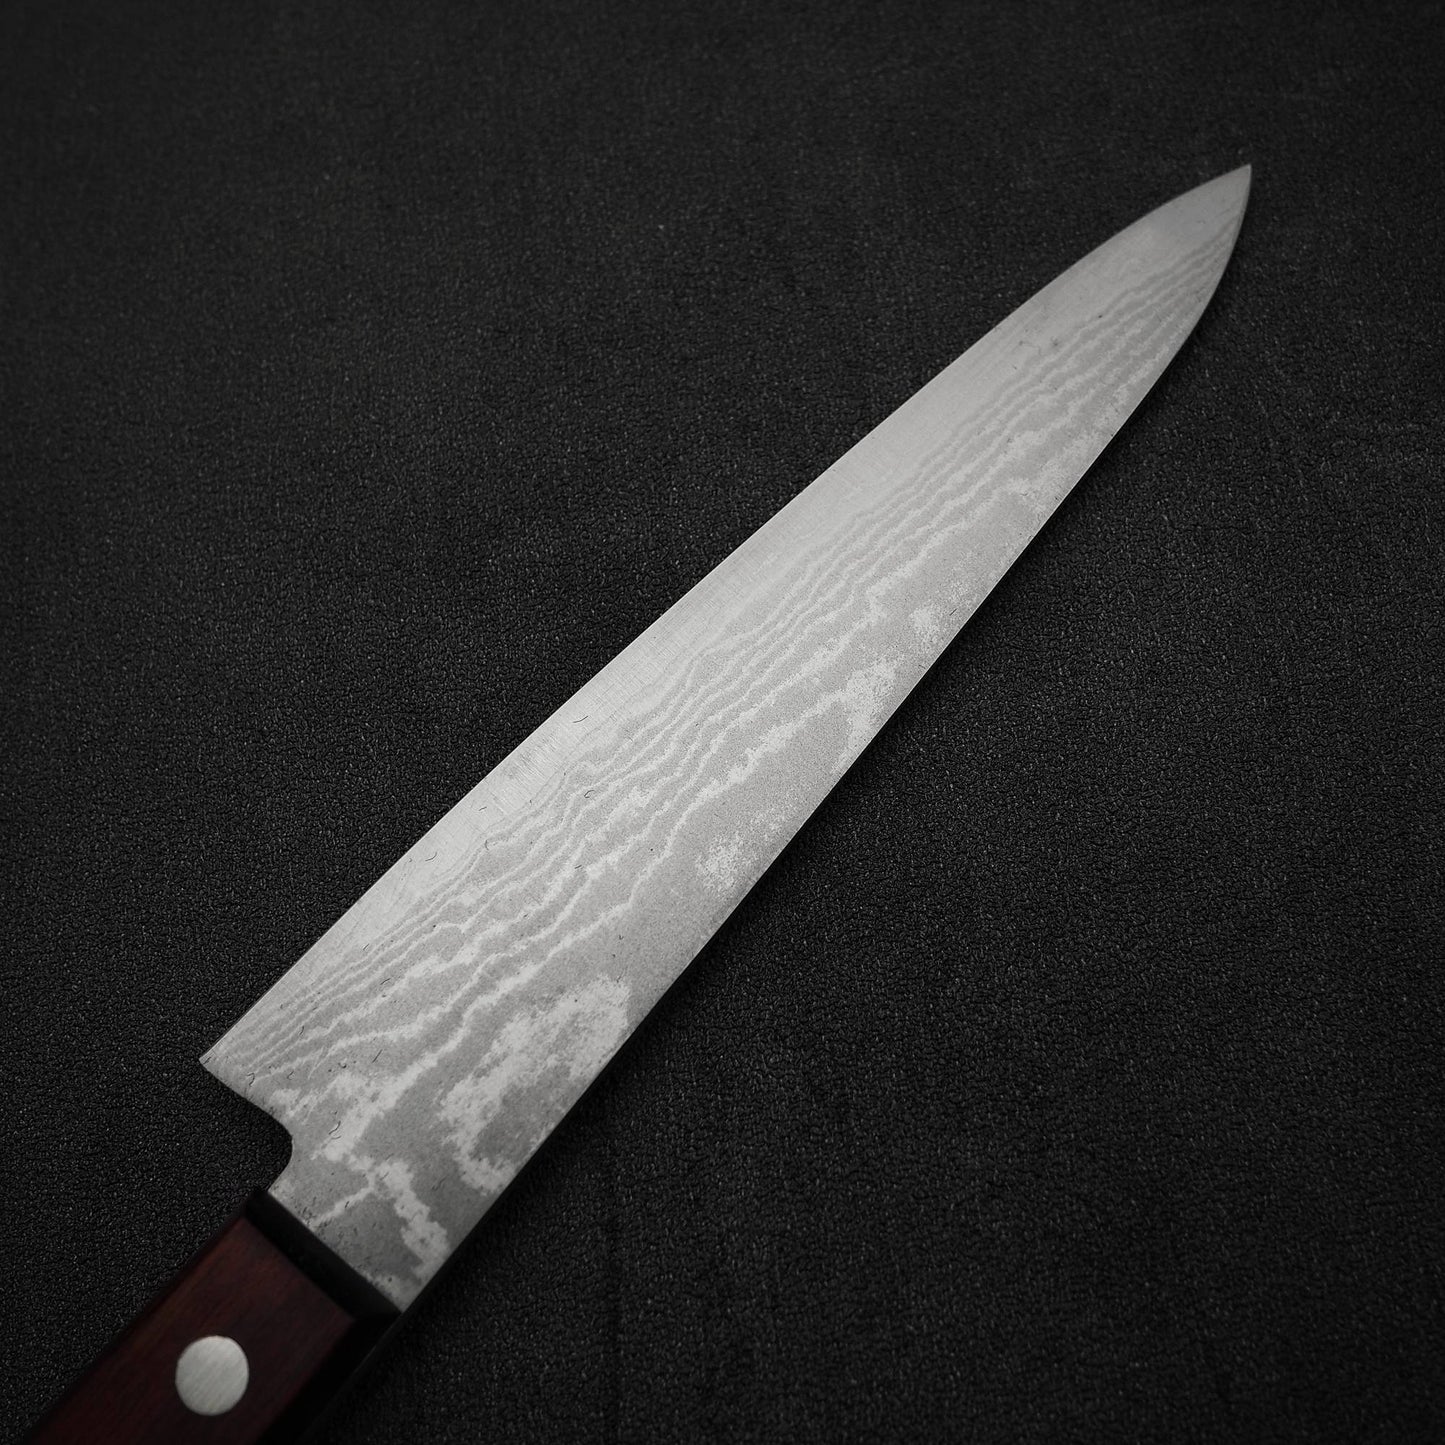 Shigeki Tanaka VG10 damascus 150mm petty knife